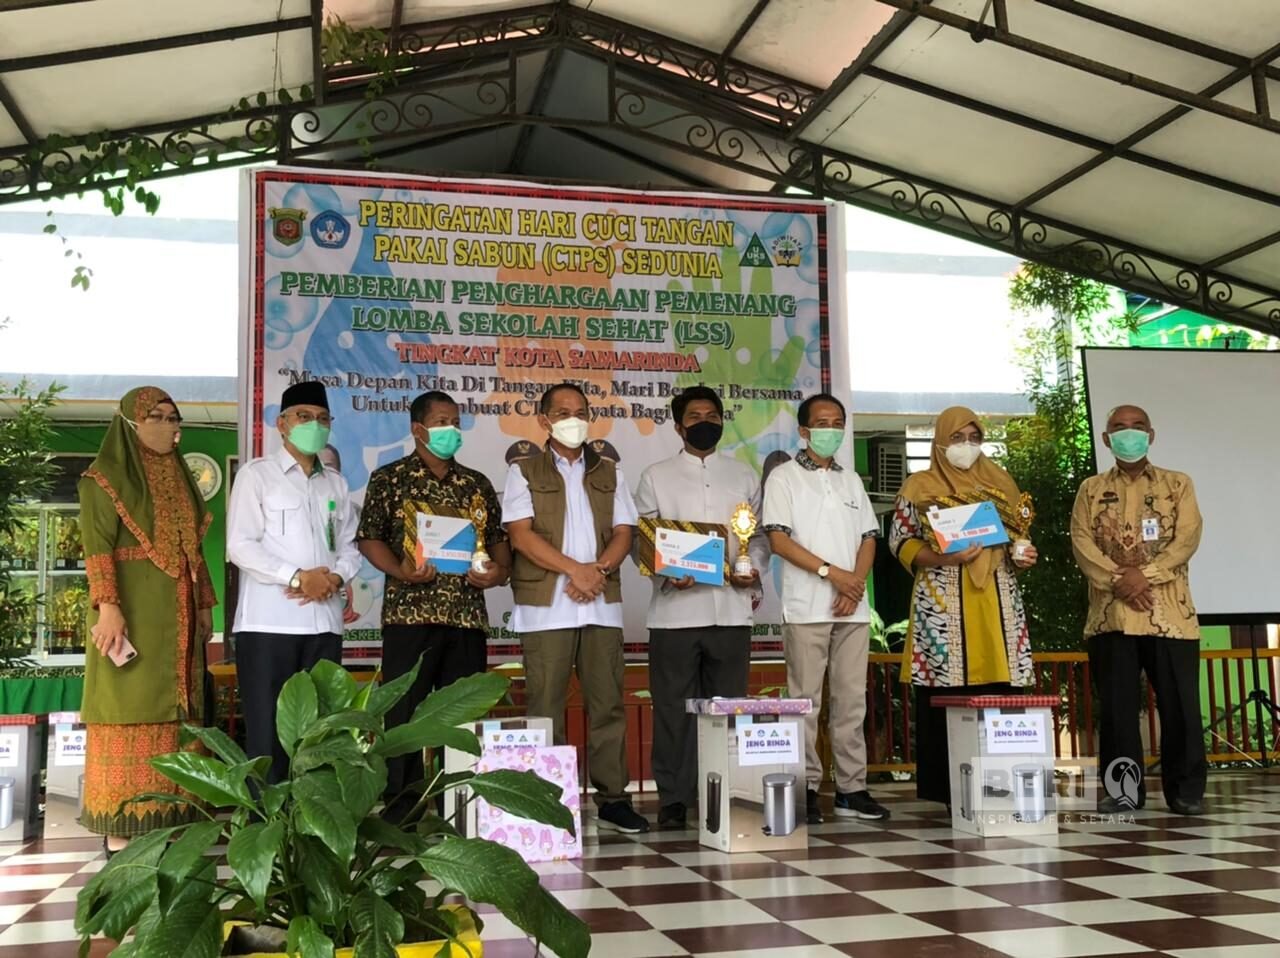 Suasana saat pemberian hadiah penghargaan pemenang Lombah sekolah sehat (LSS) tingkat Kota Samarinda. ©Dodi/beri.id